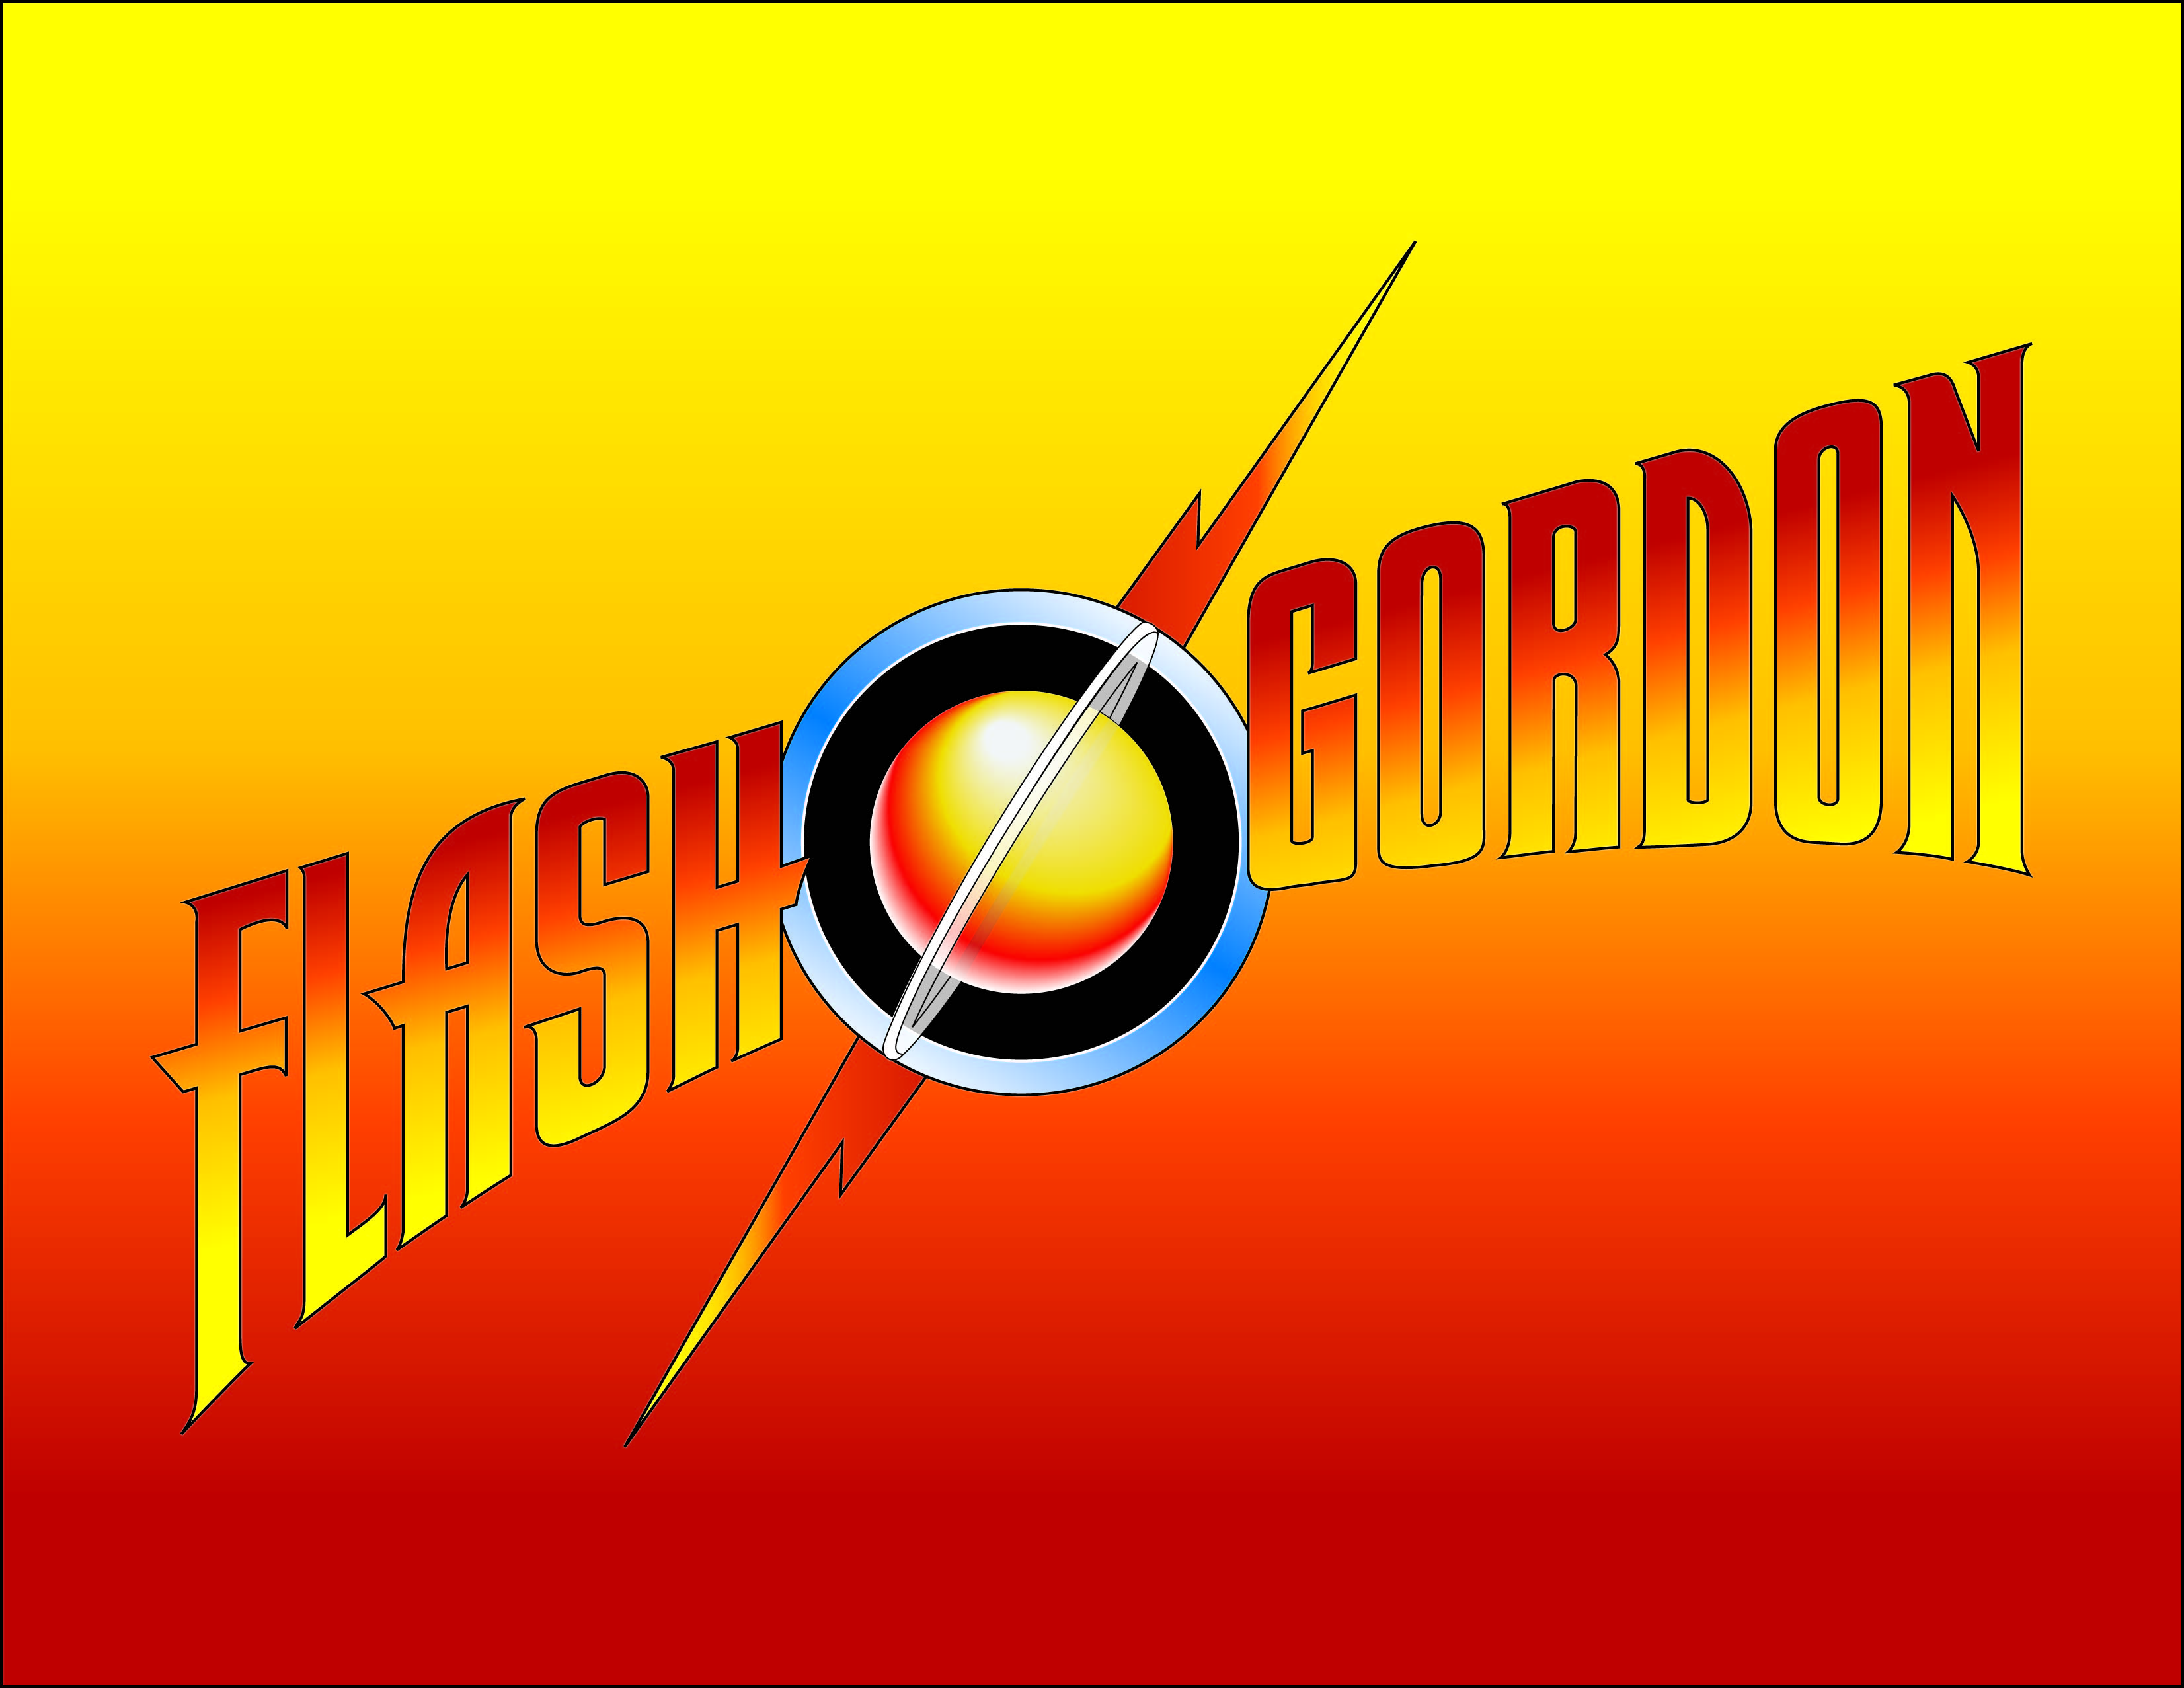 Flash Gordon #10